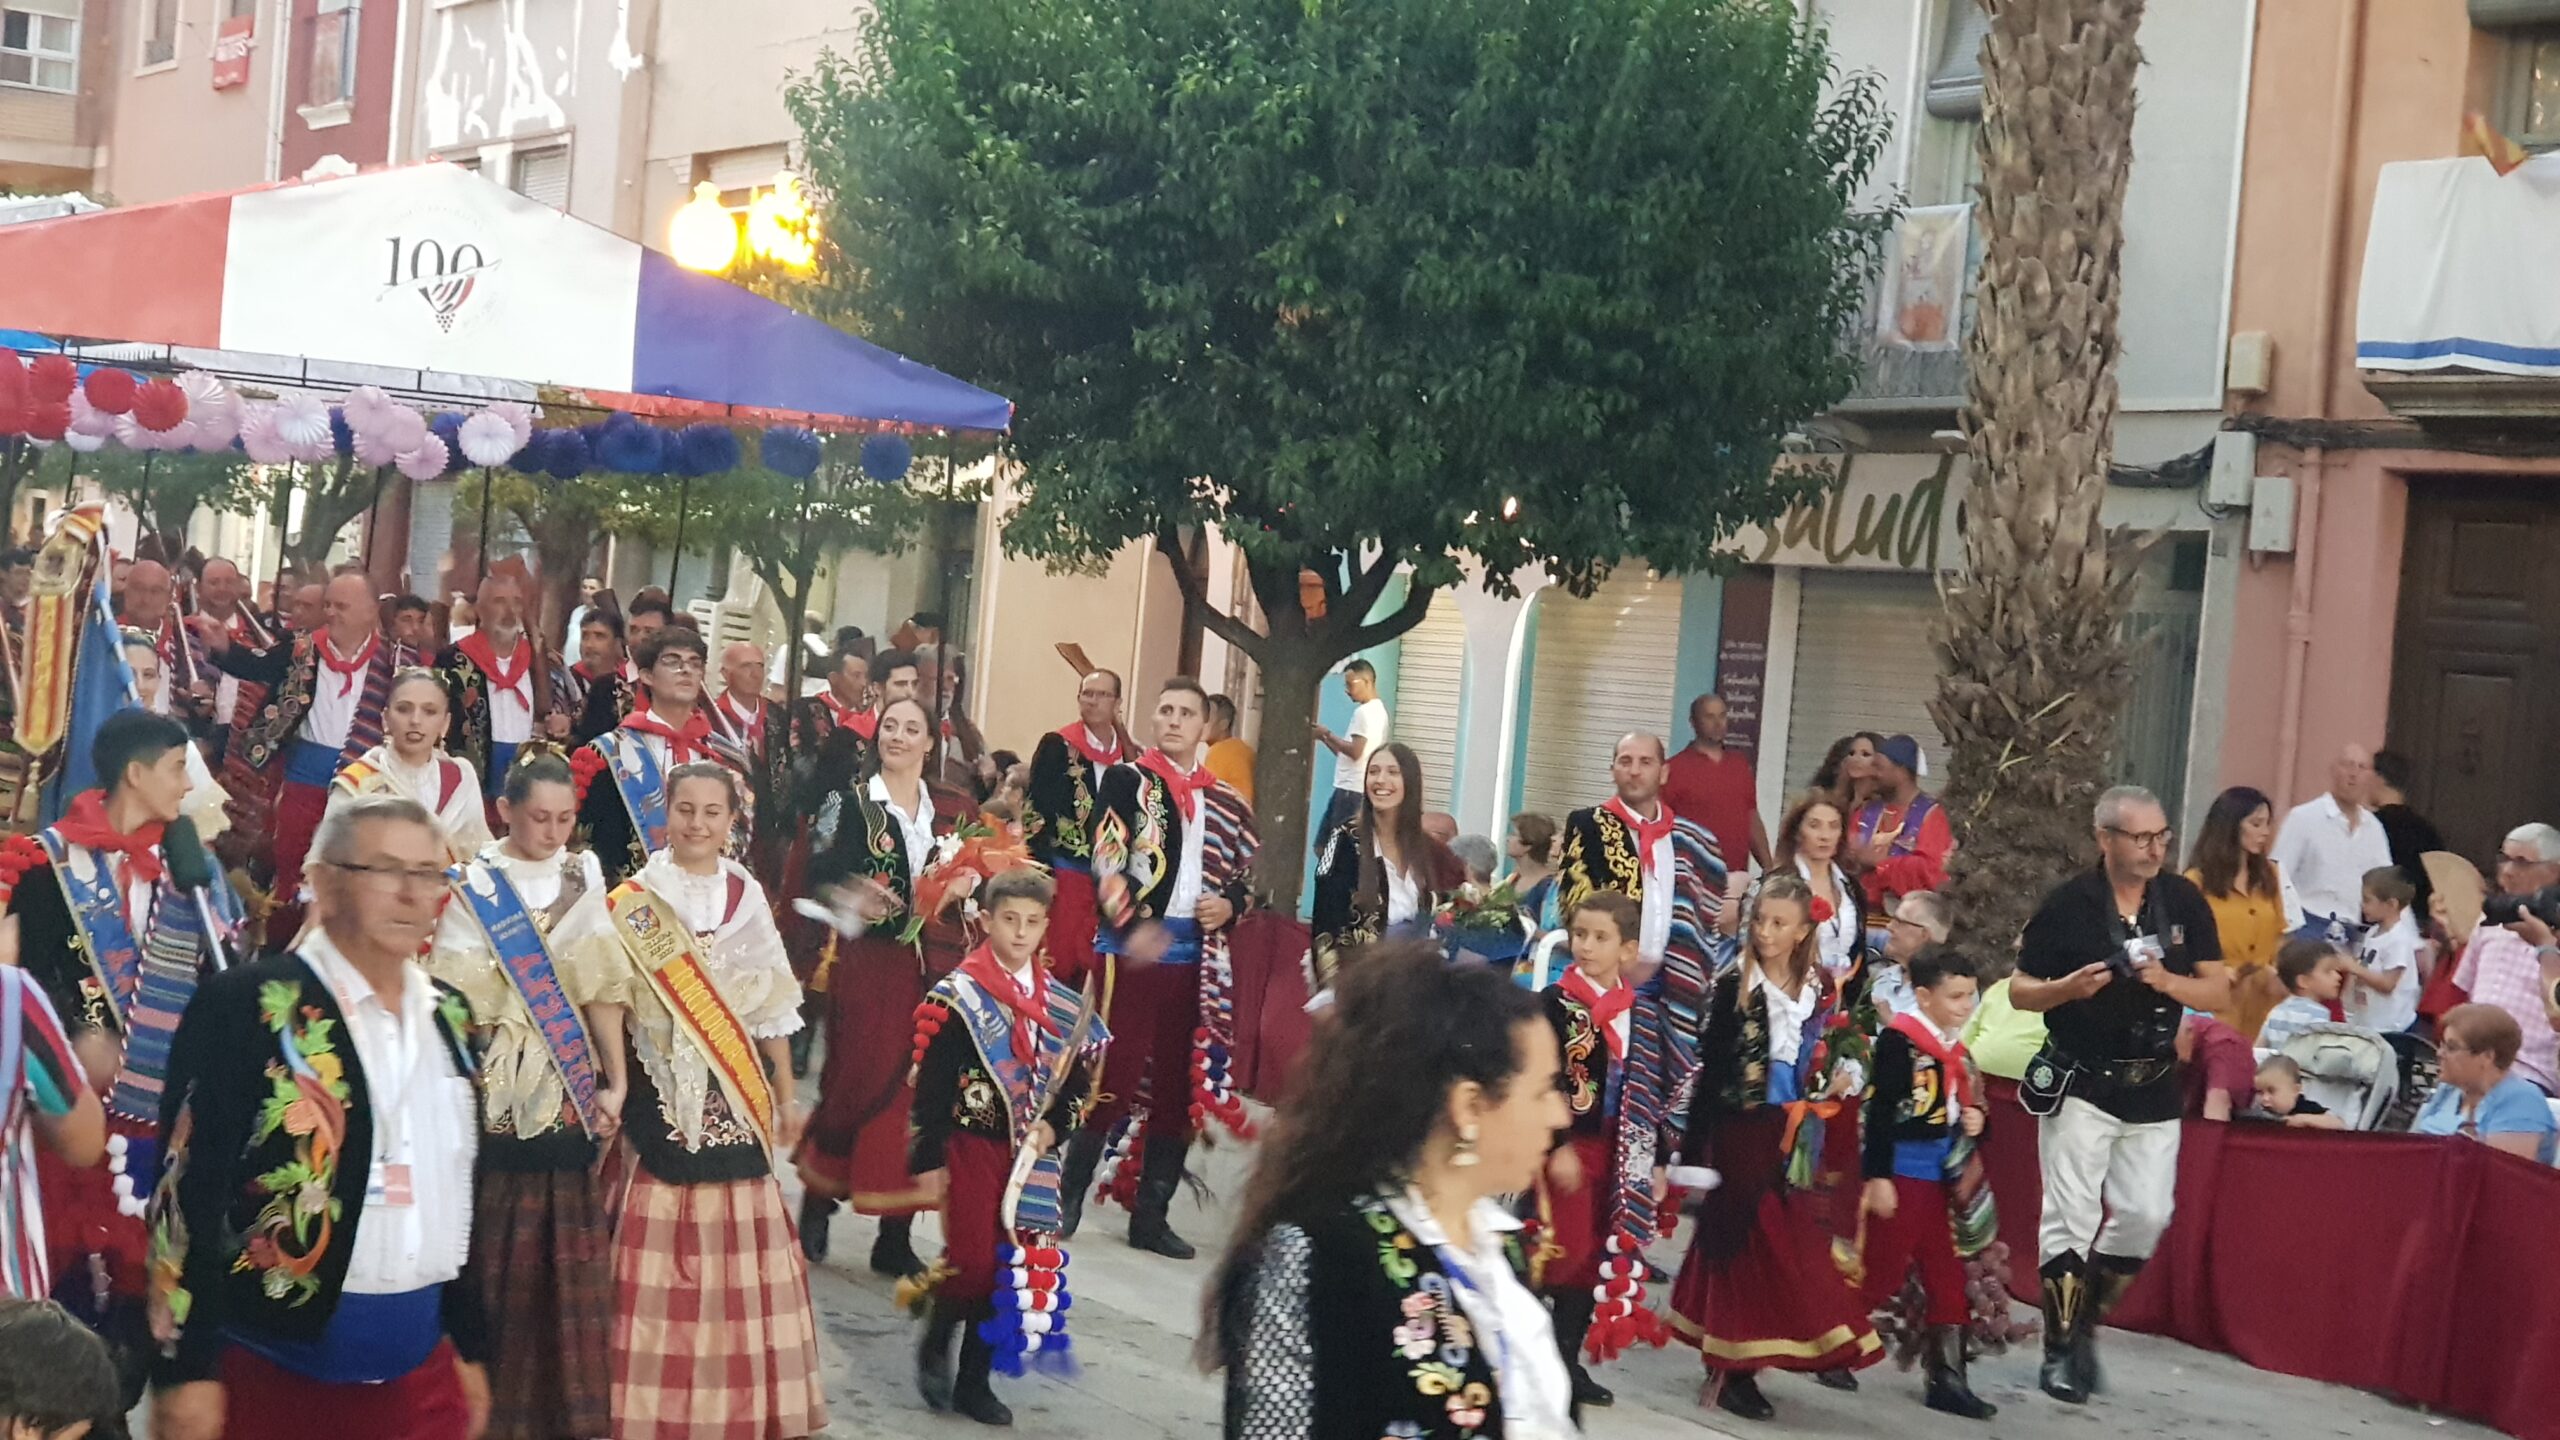 La Comparsa de Andaluces abre el año de su Centenario estrenando banderas y  reconociendo a sus socios y a sus socias más antiguos